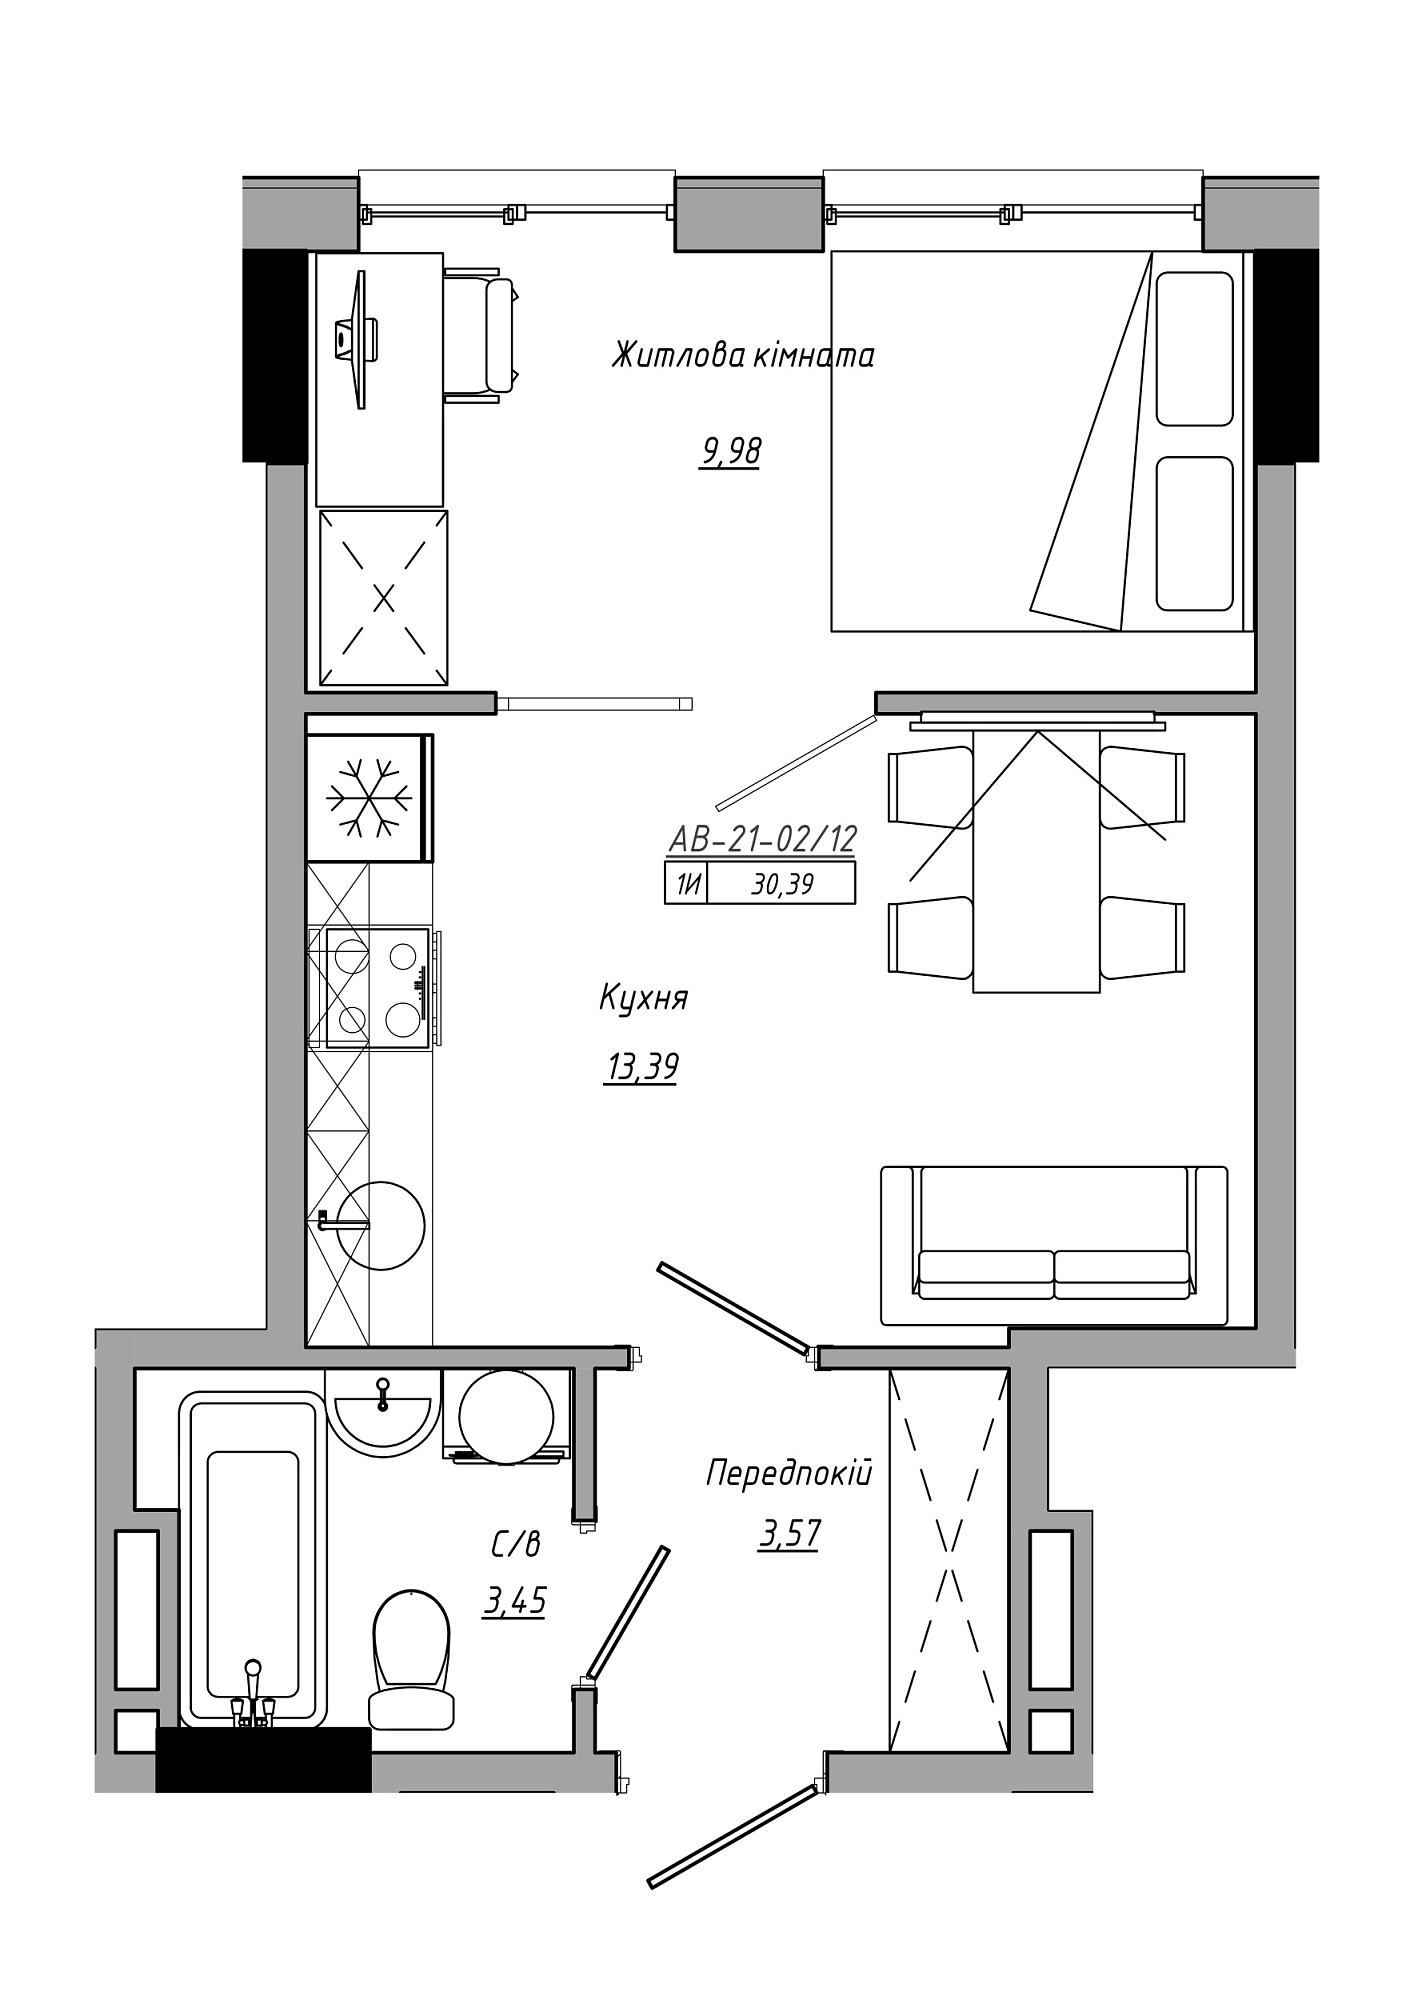 Планировка 1-к квартира площей 30.39м2, AB-21-02/00012.